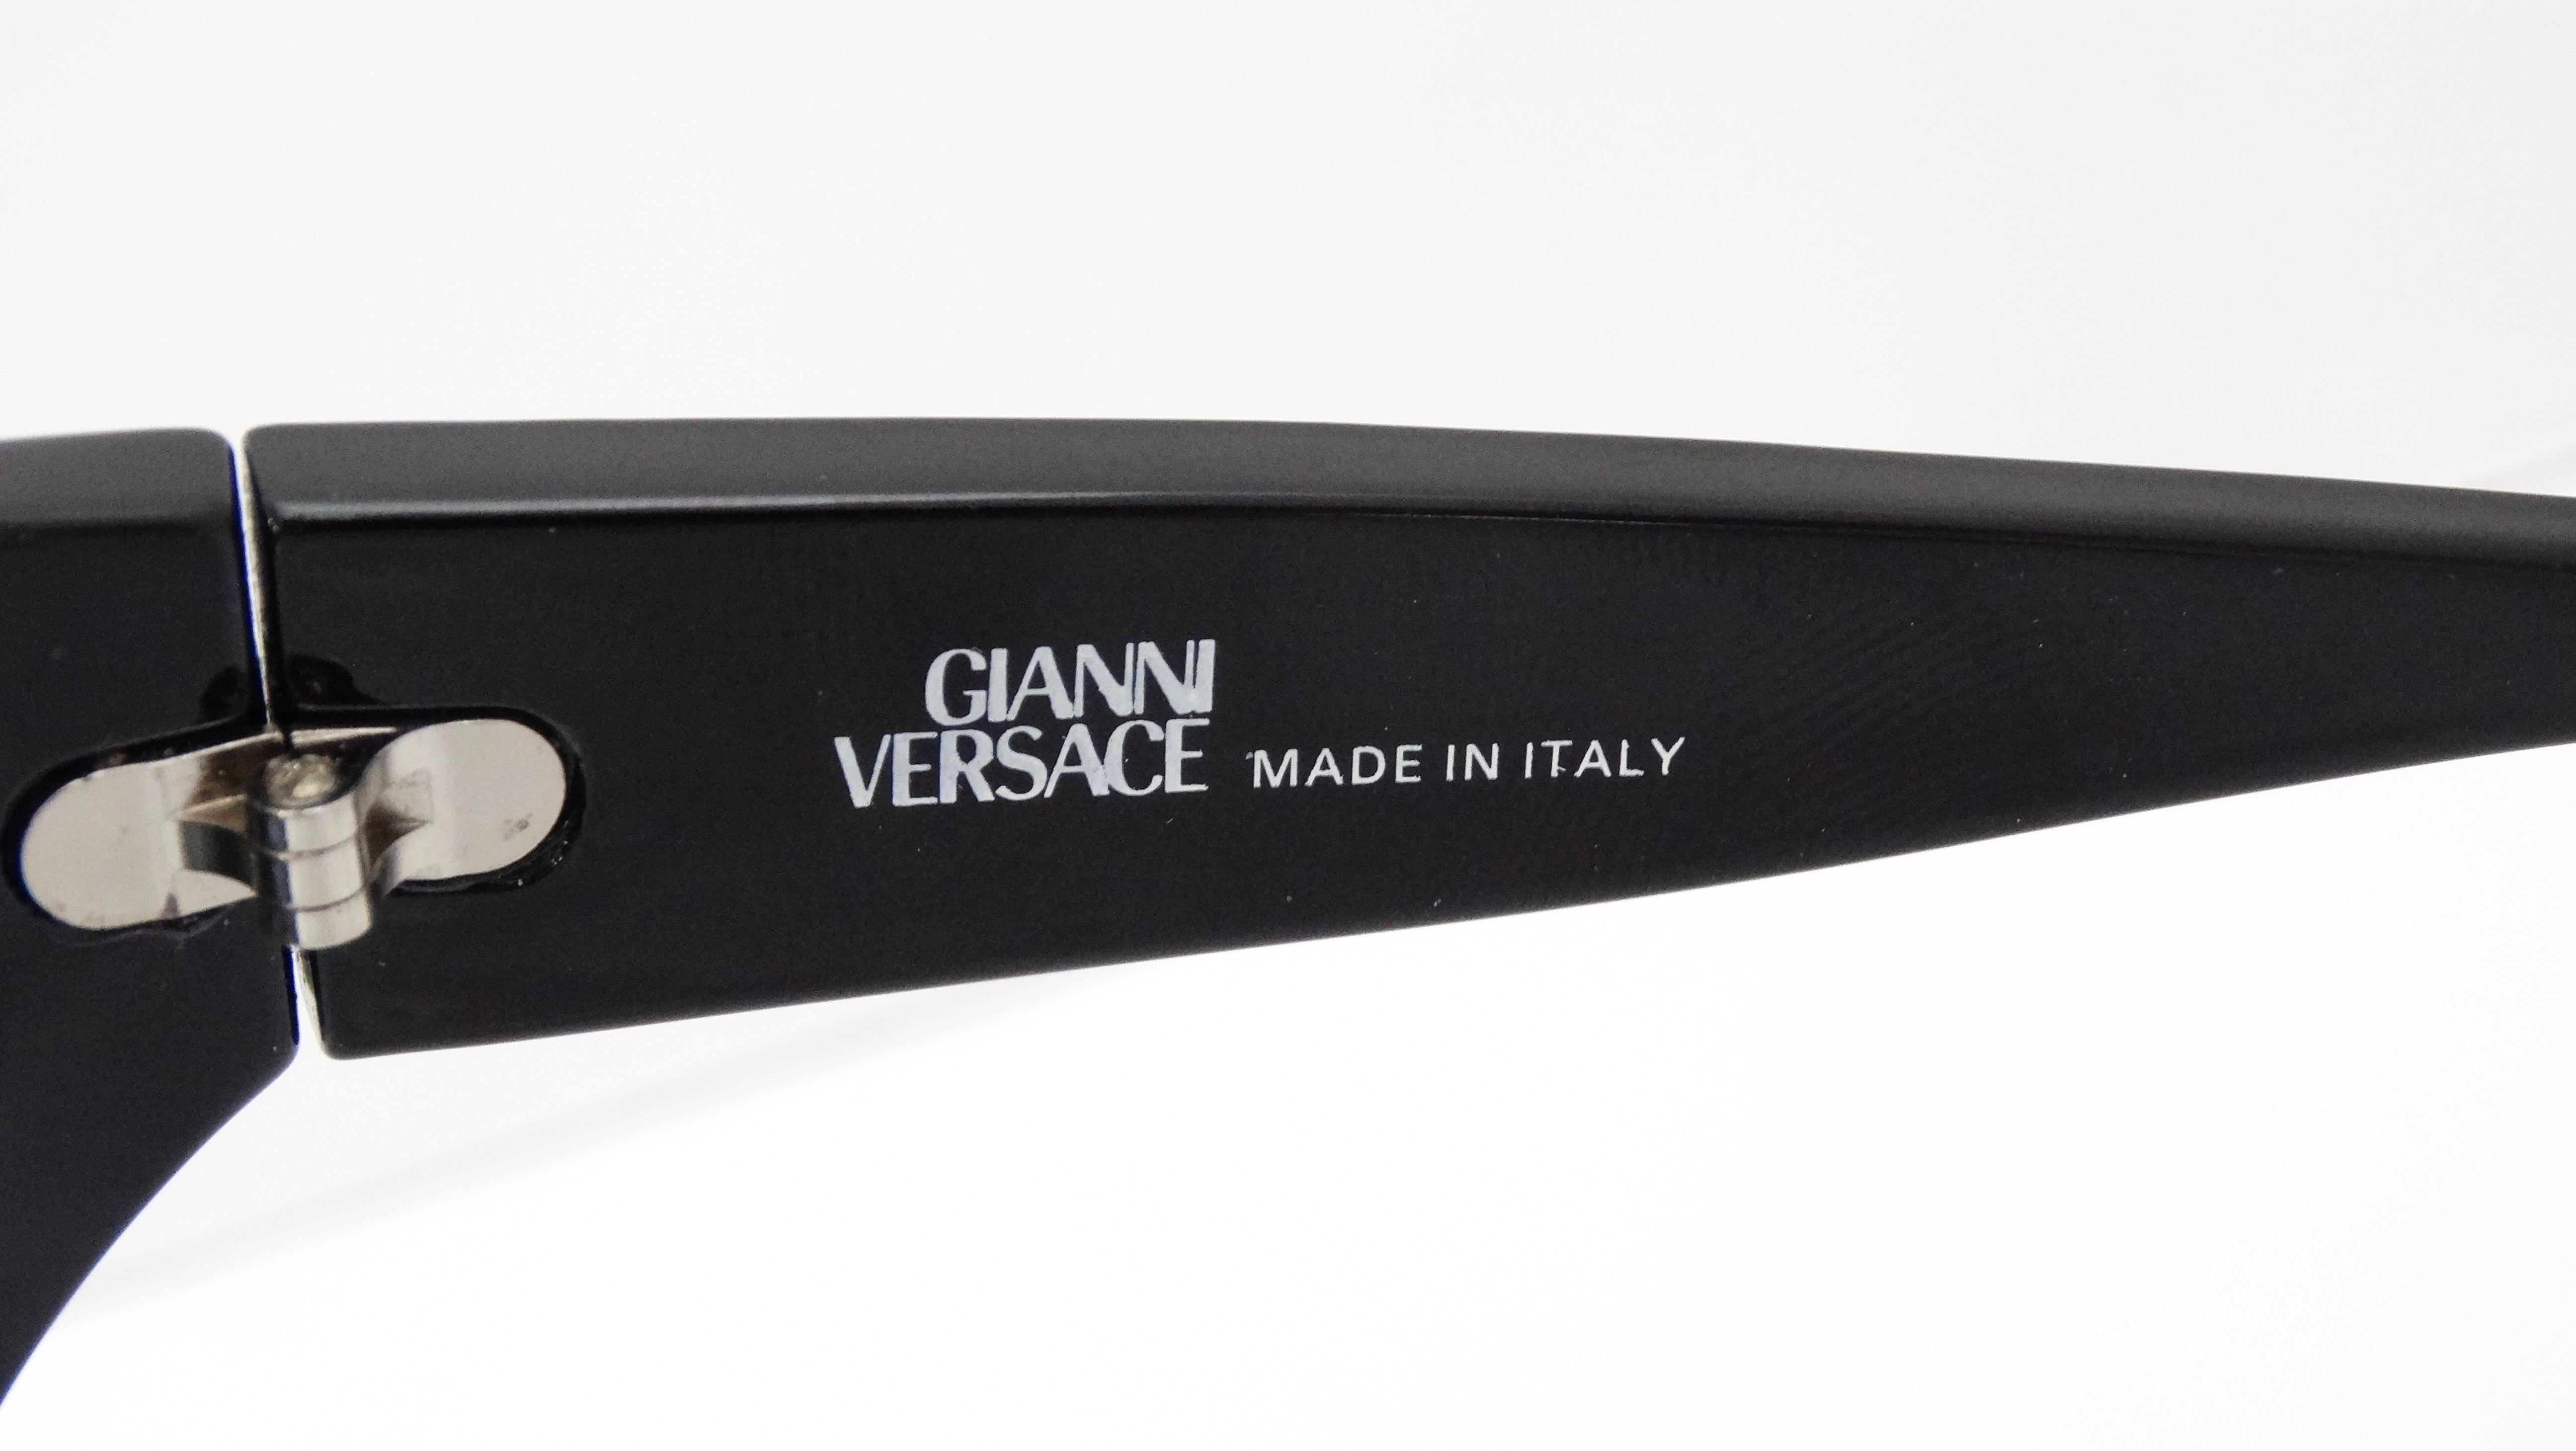 versace studded sunglasses